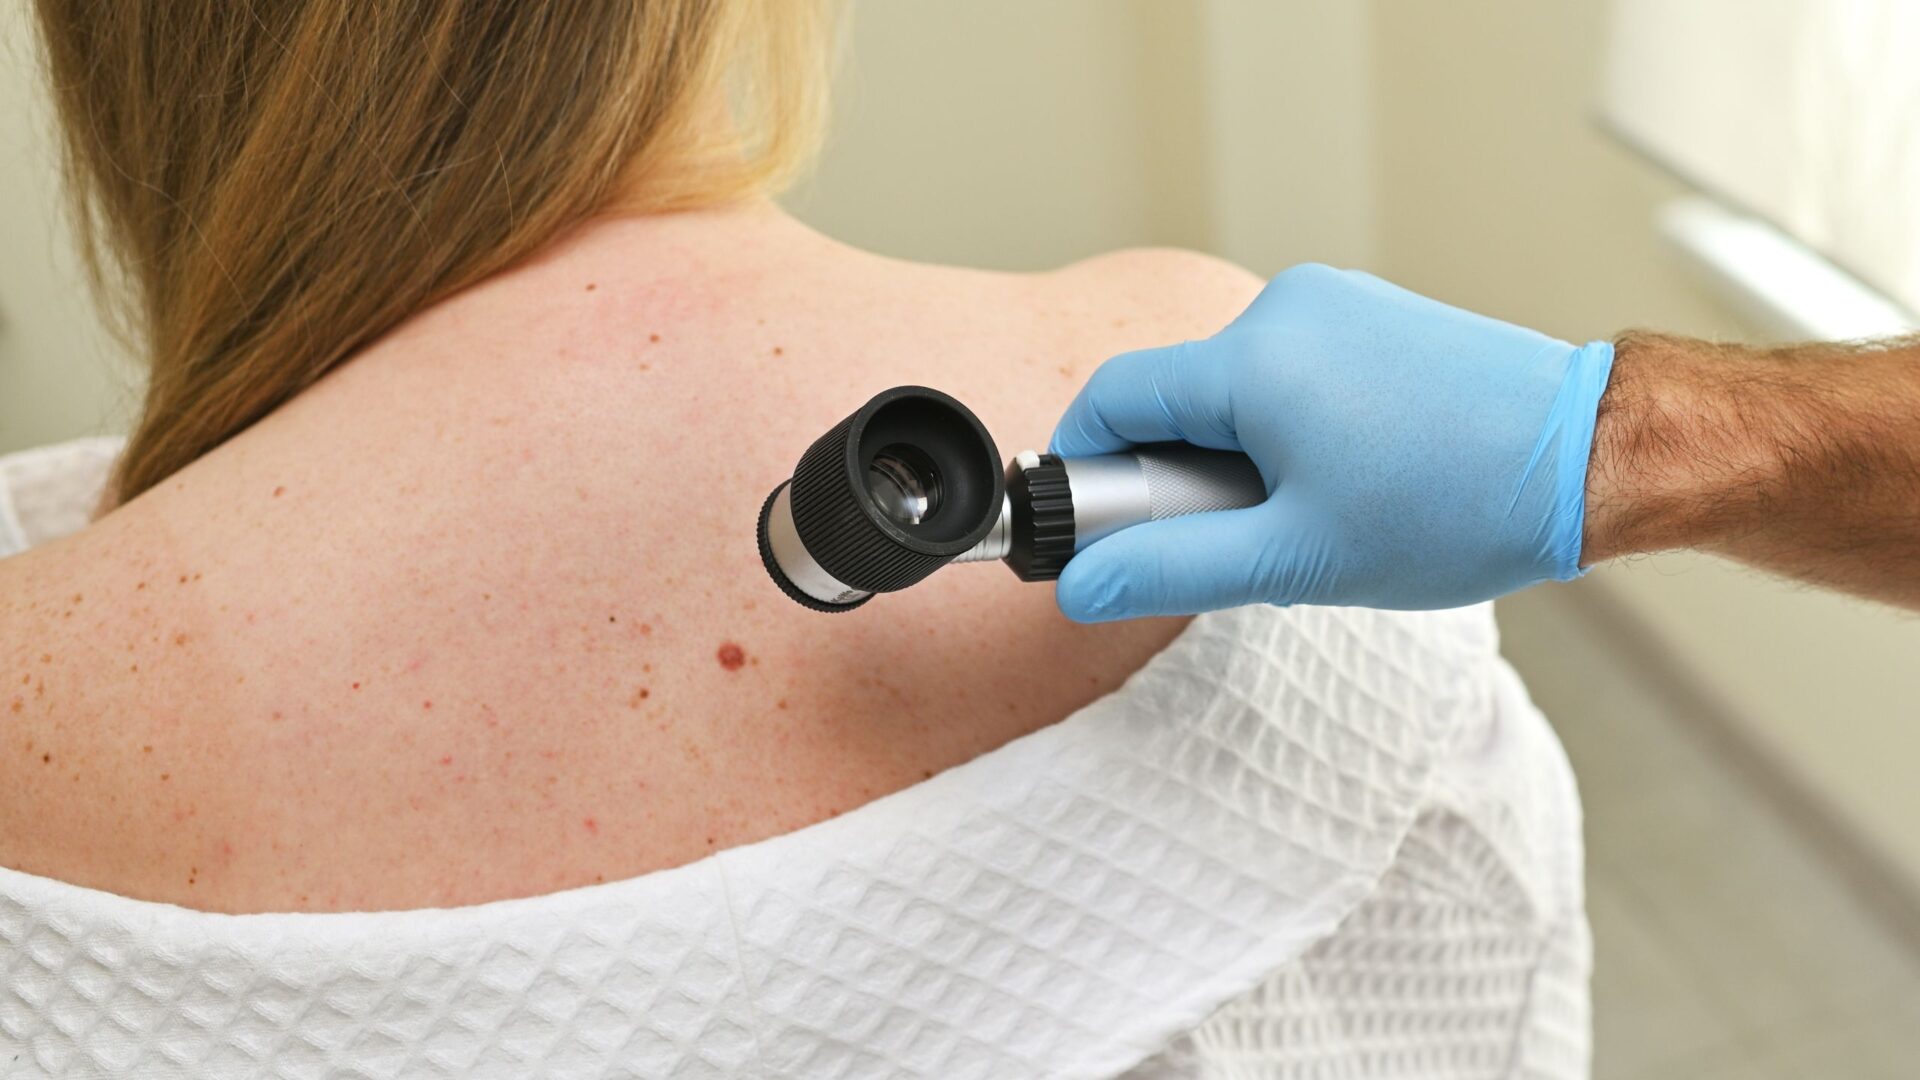 Vroegtijdig melanoom herkennen met de ABCDEF-methode